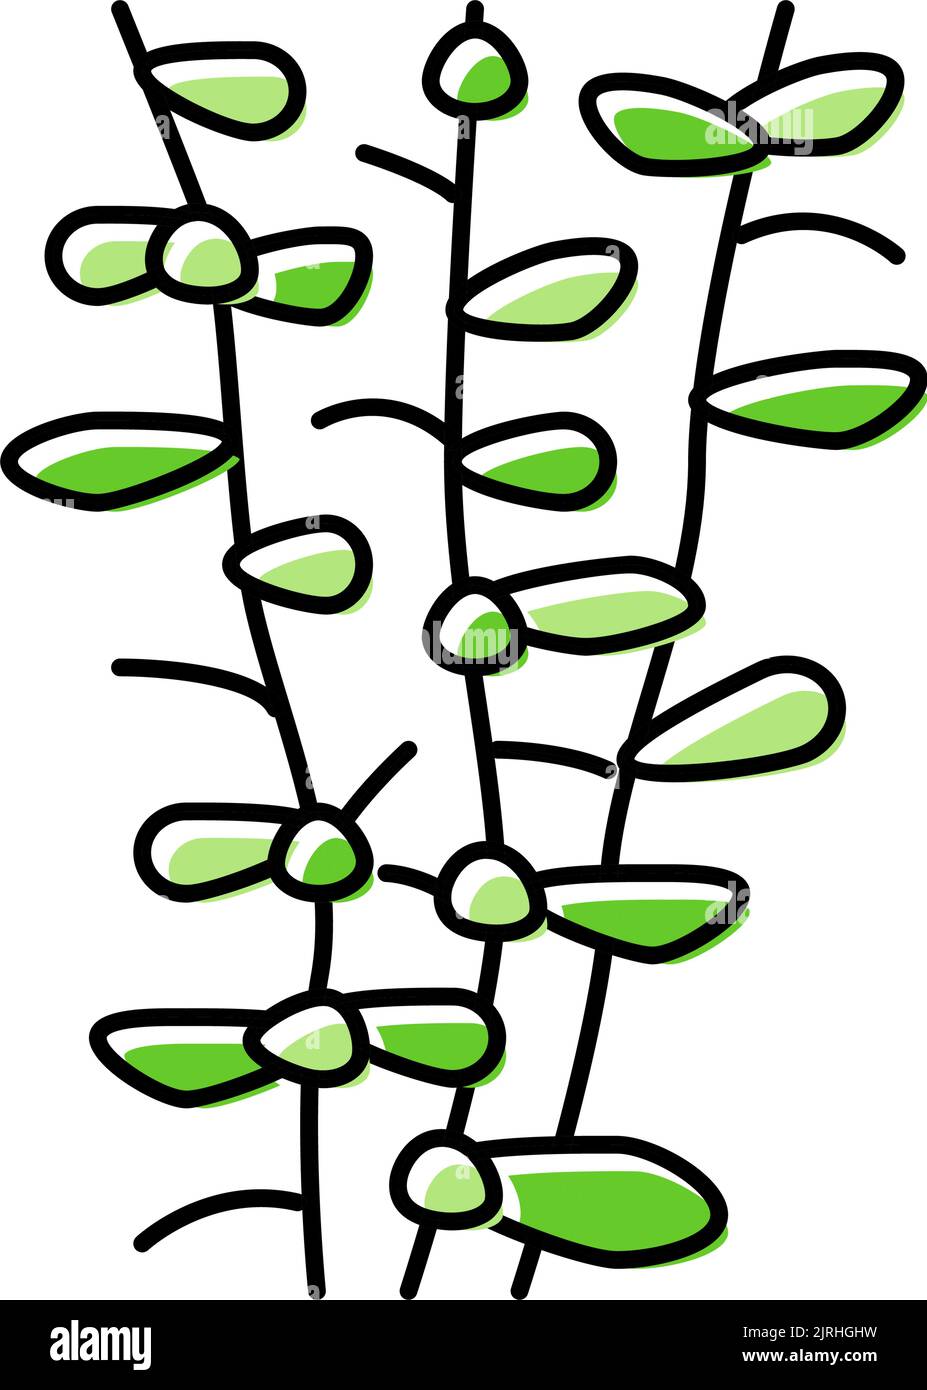 Moneywort Seegras Farbe Symbol Vektor Illustration Stock Vektor